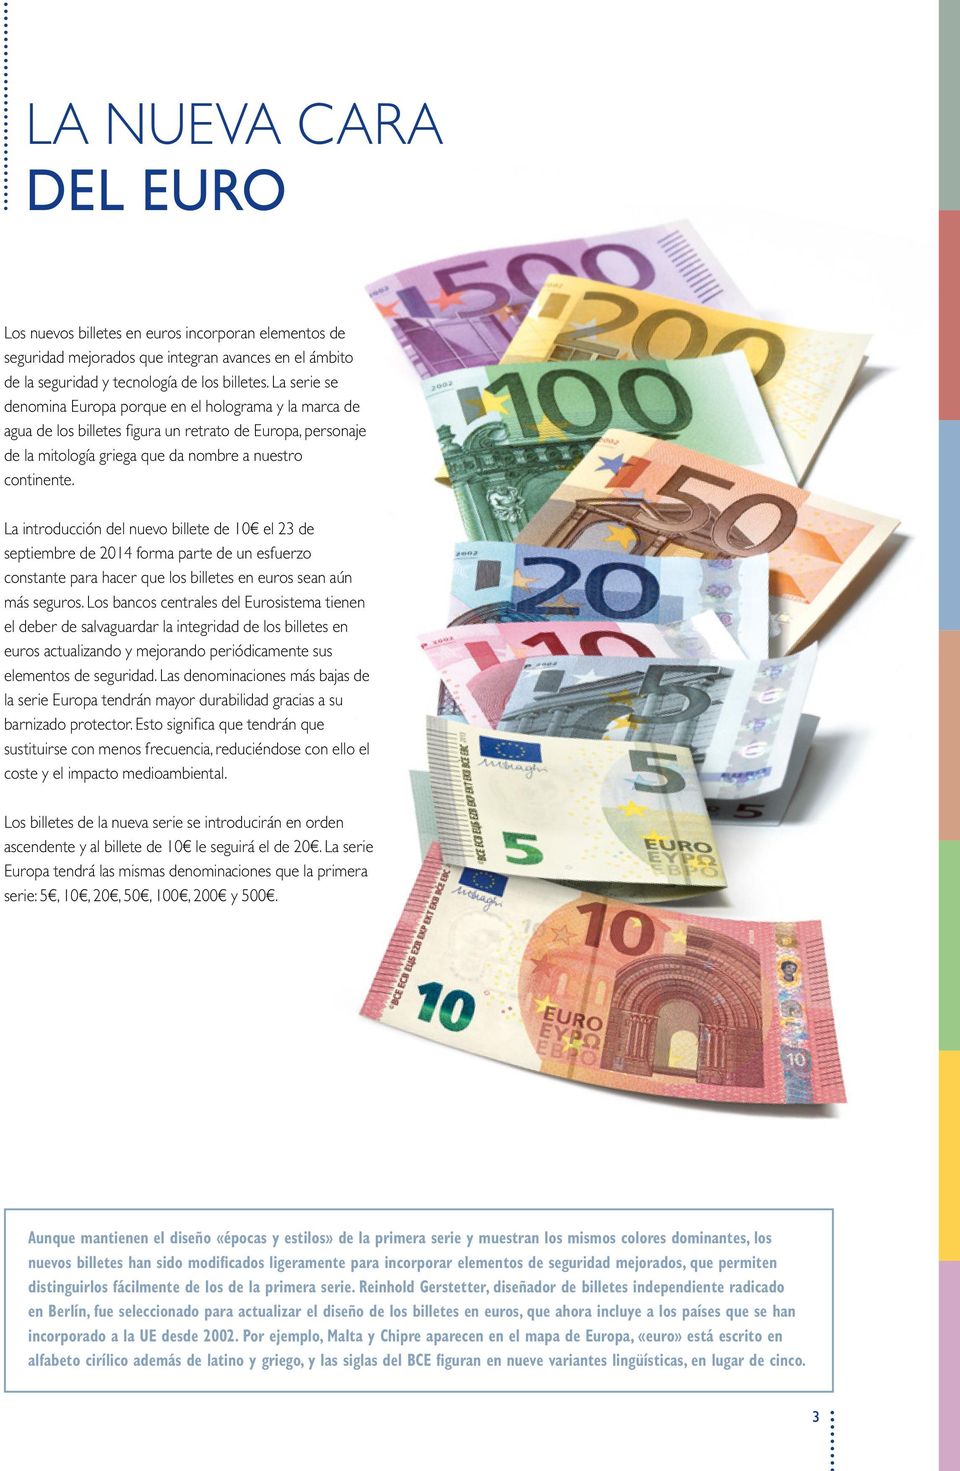 La introducción del nuevo billete de el 23 de septiembre de 2014 forma parte de un esfuerzo constante para hacer que los billetes en euros sean aún más seguros.